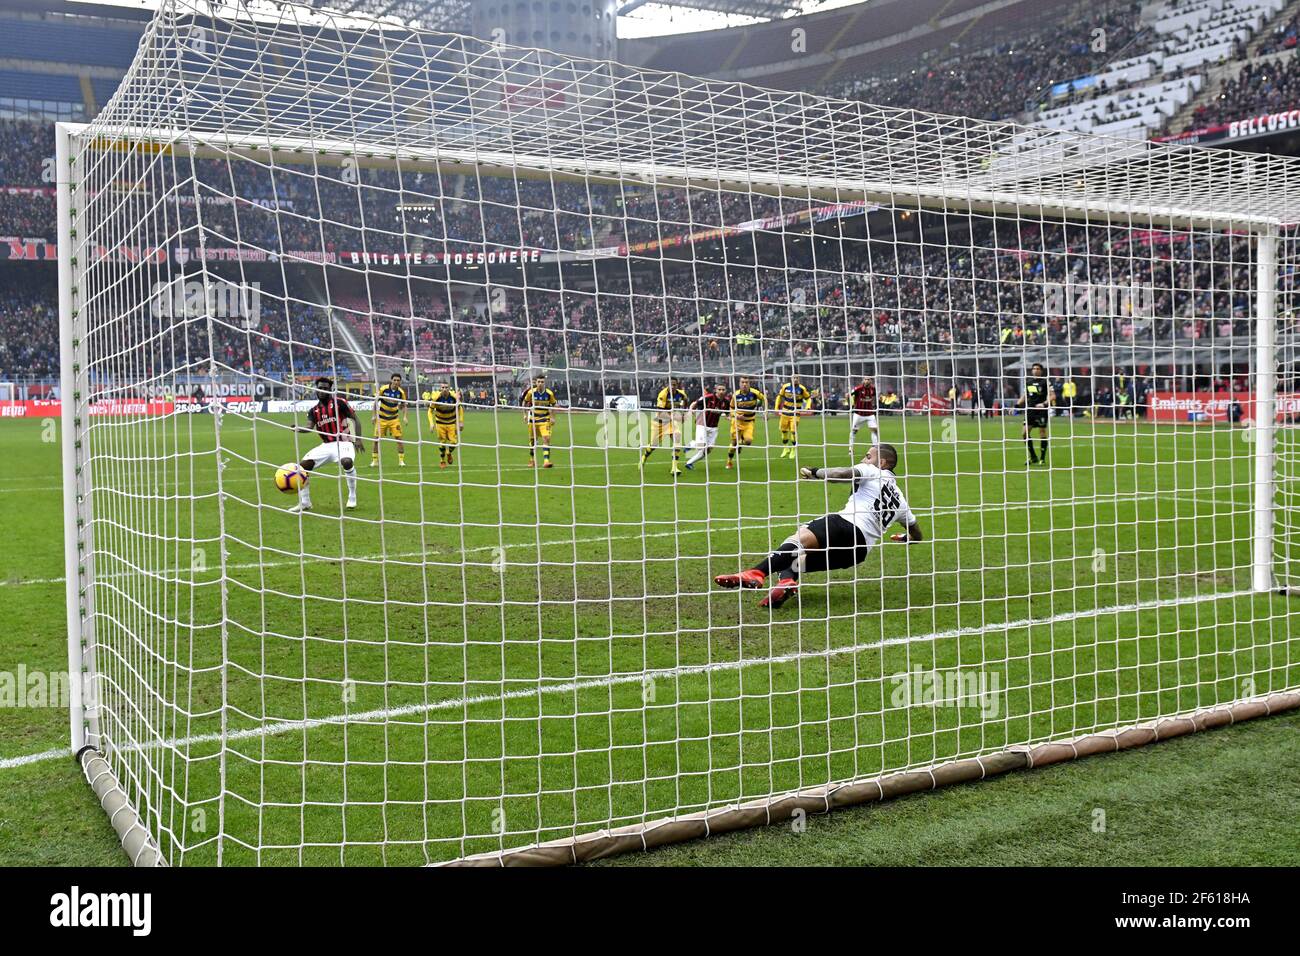 Penalty Kick View depuis l'arrière du poteau de but, pendant le match de football de la série italienne au stade San Siro. Milan, Italie. Banque D'Images